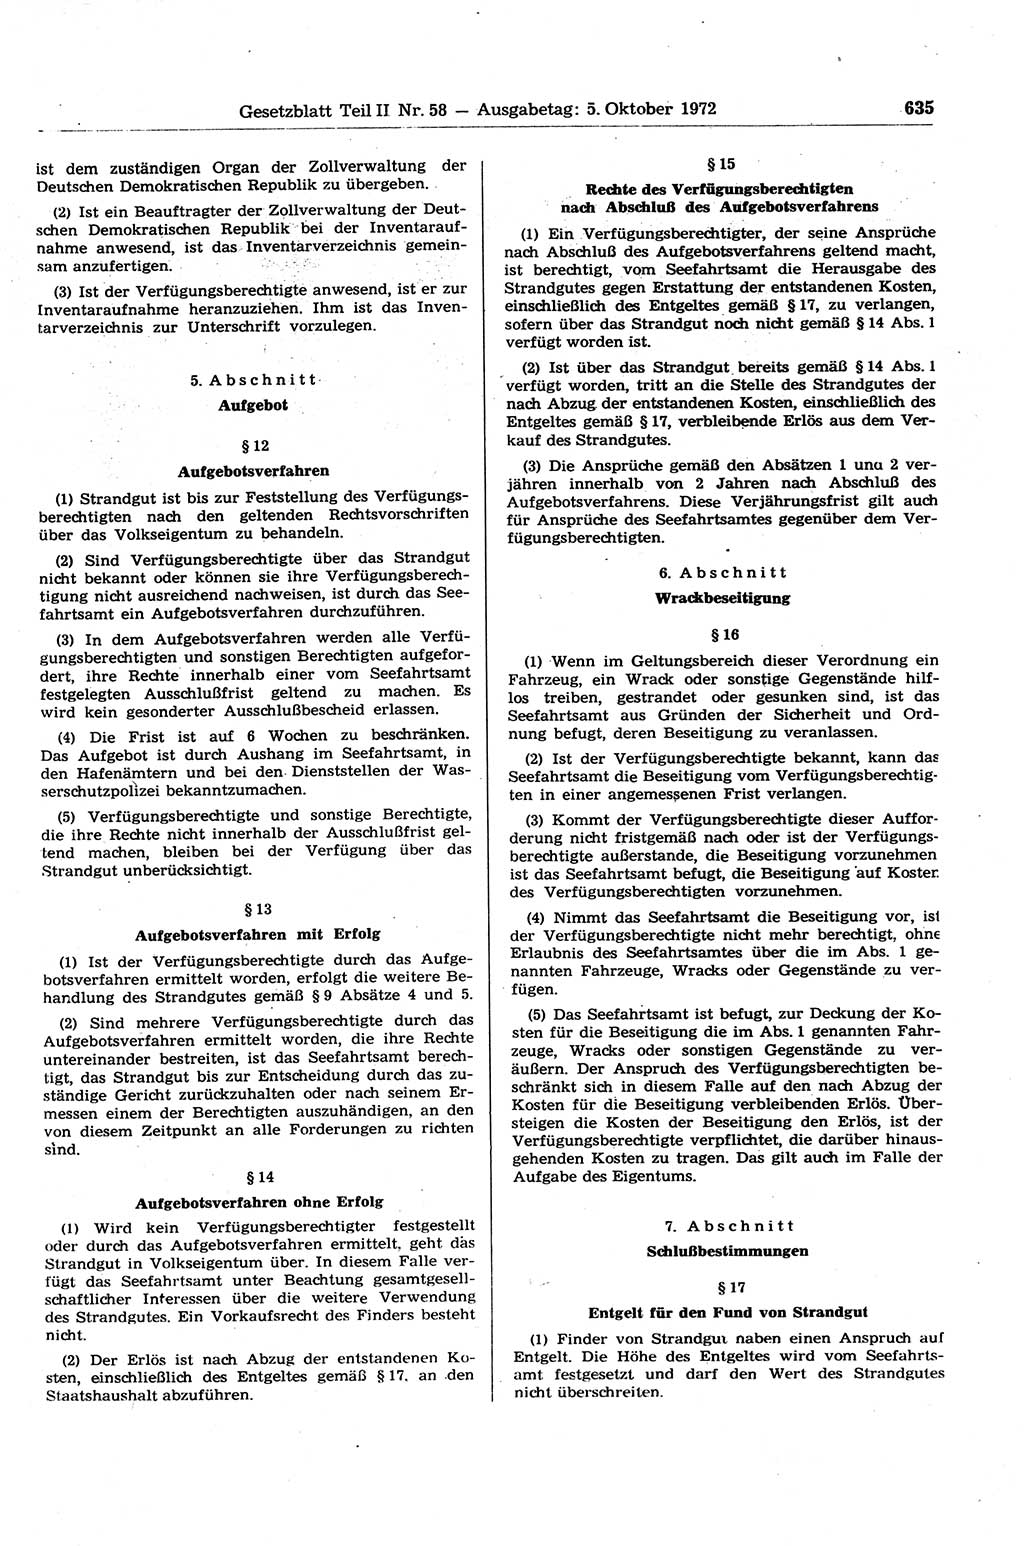 Gesetzblatt (GBl.) der Deutschen Demokratischen Republik (DDR) Teil ⅠⅠ 1972, Seite 635 (GBl. DDR ⅠⅠ 1972, S. 635)